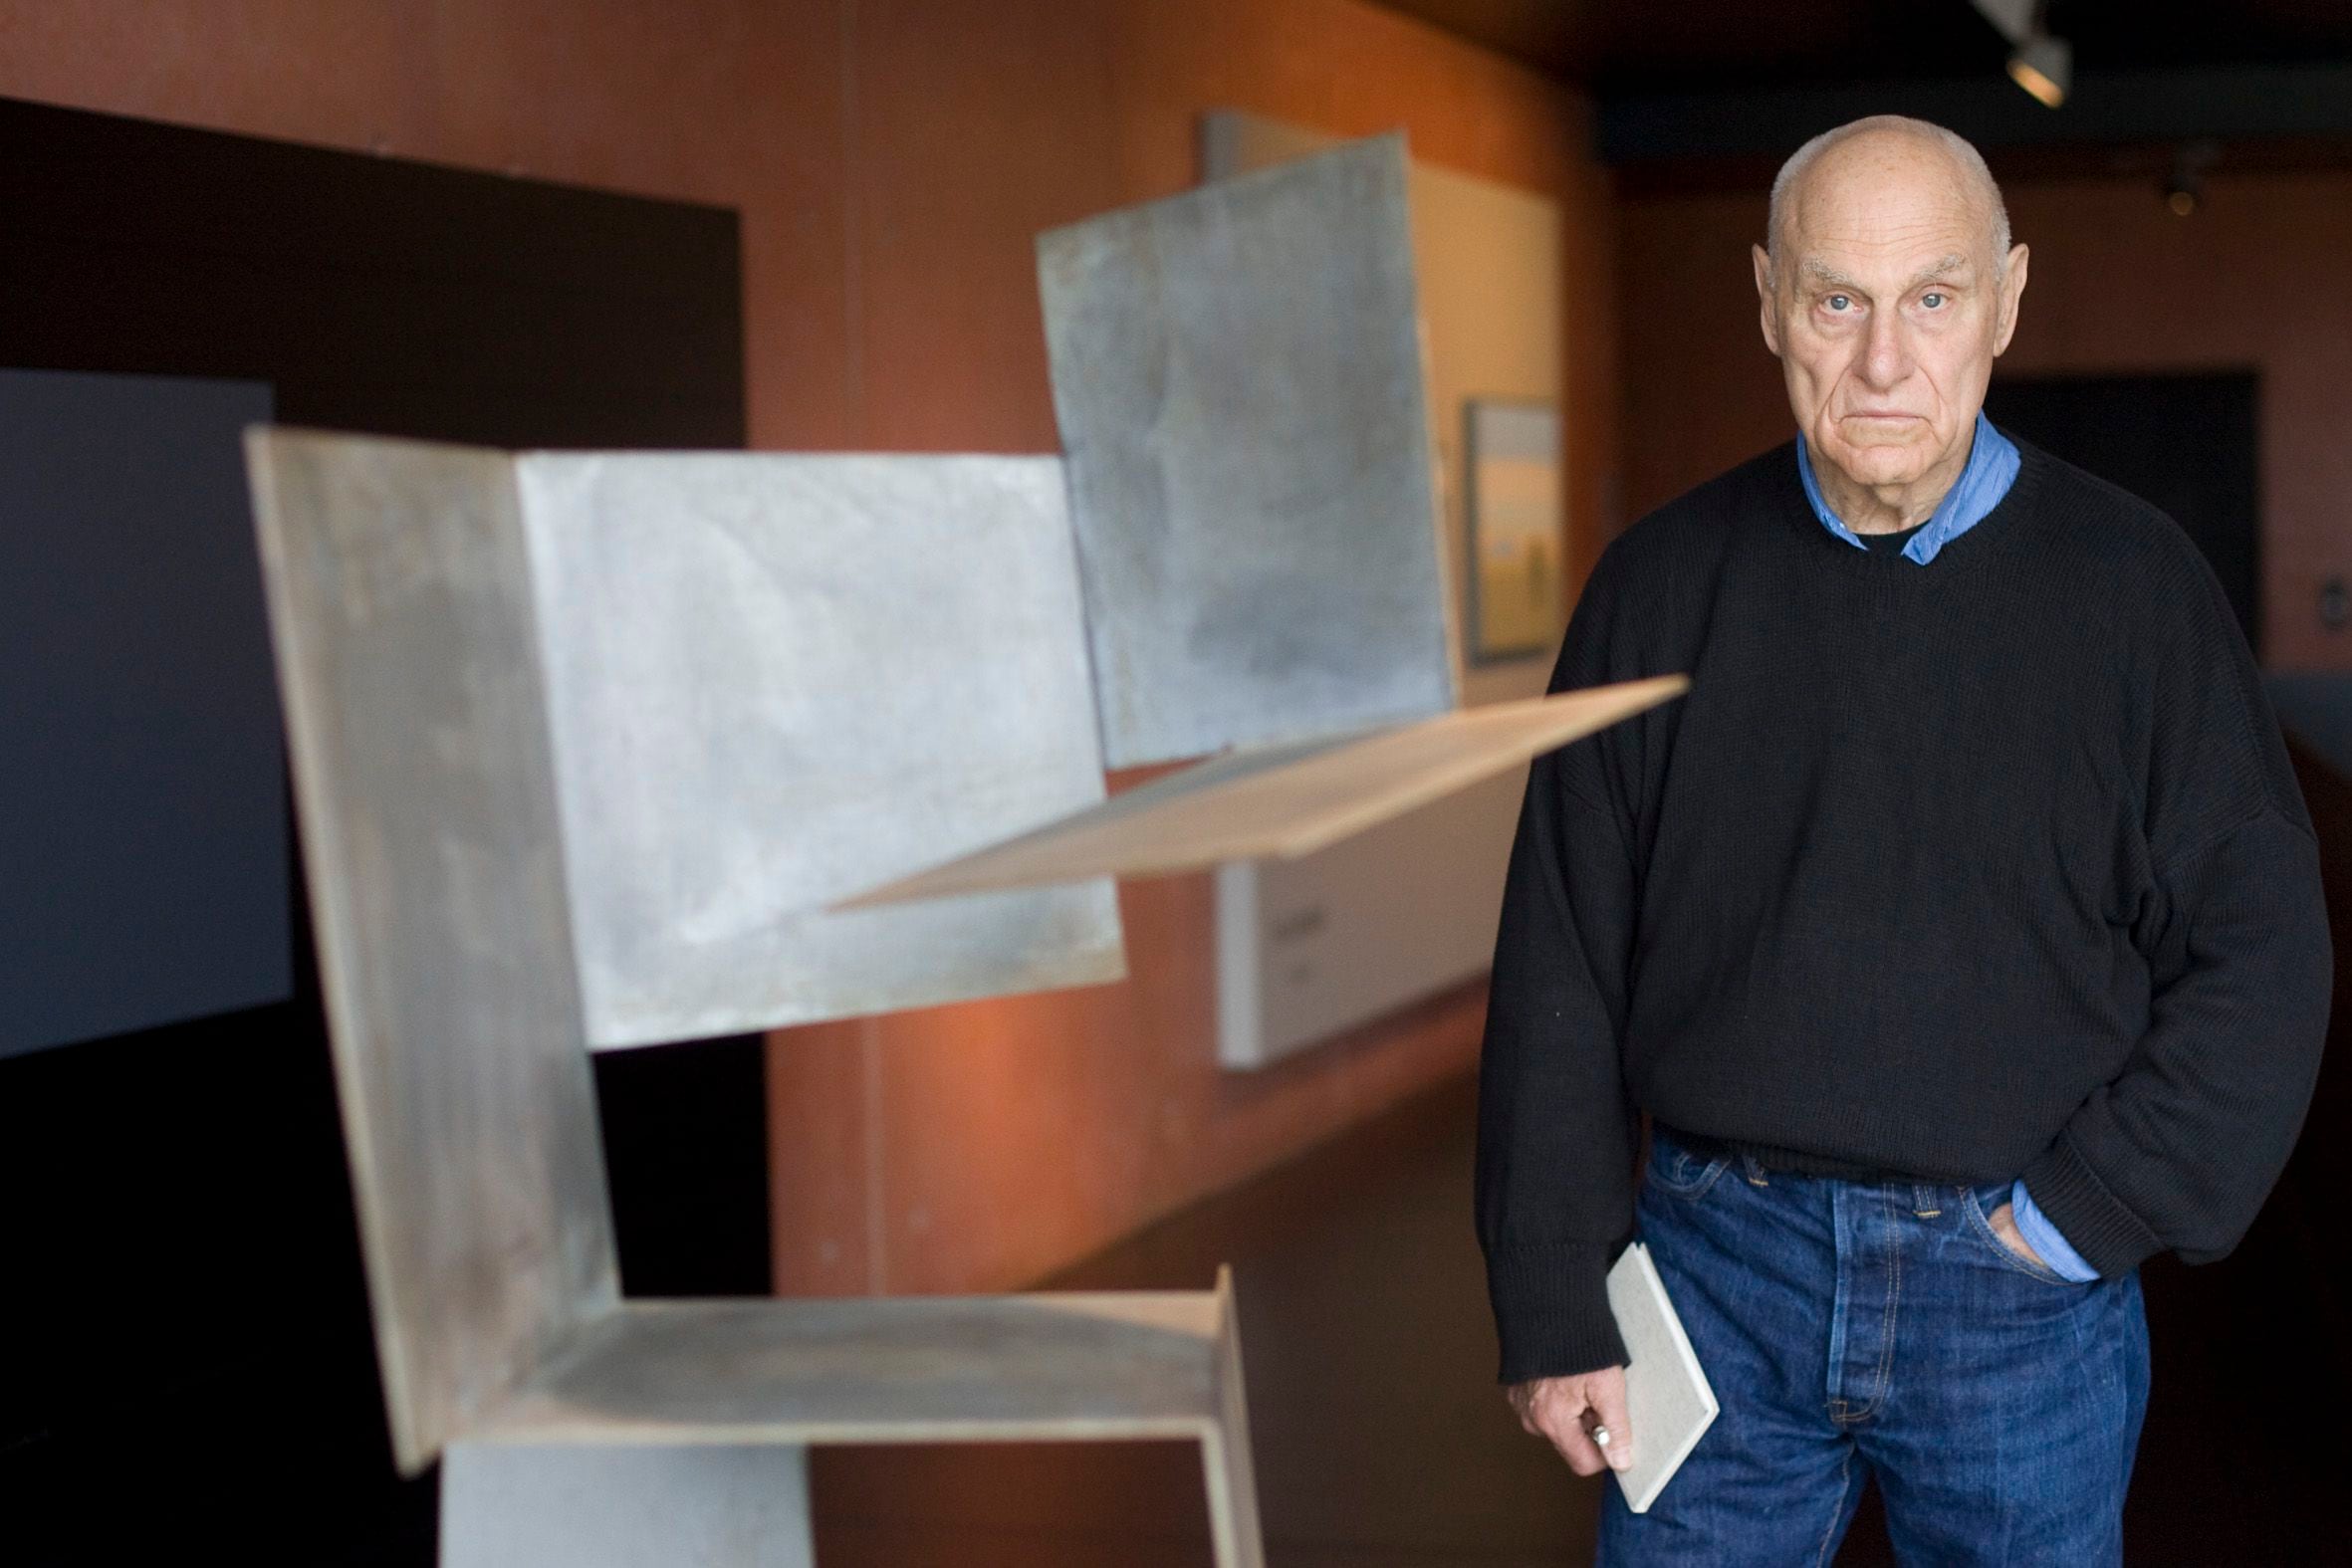 Richard Serra: un acontecimiento en Bilbao